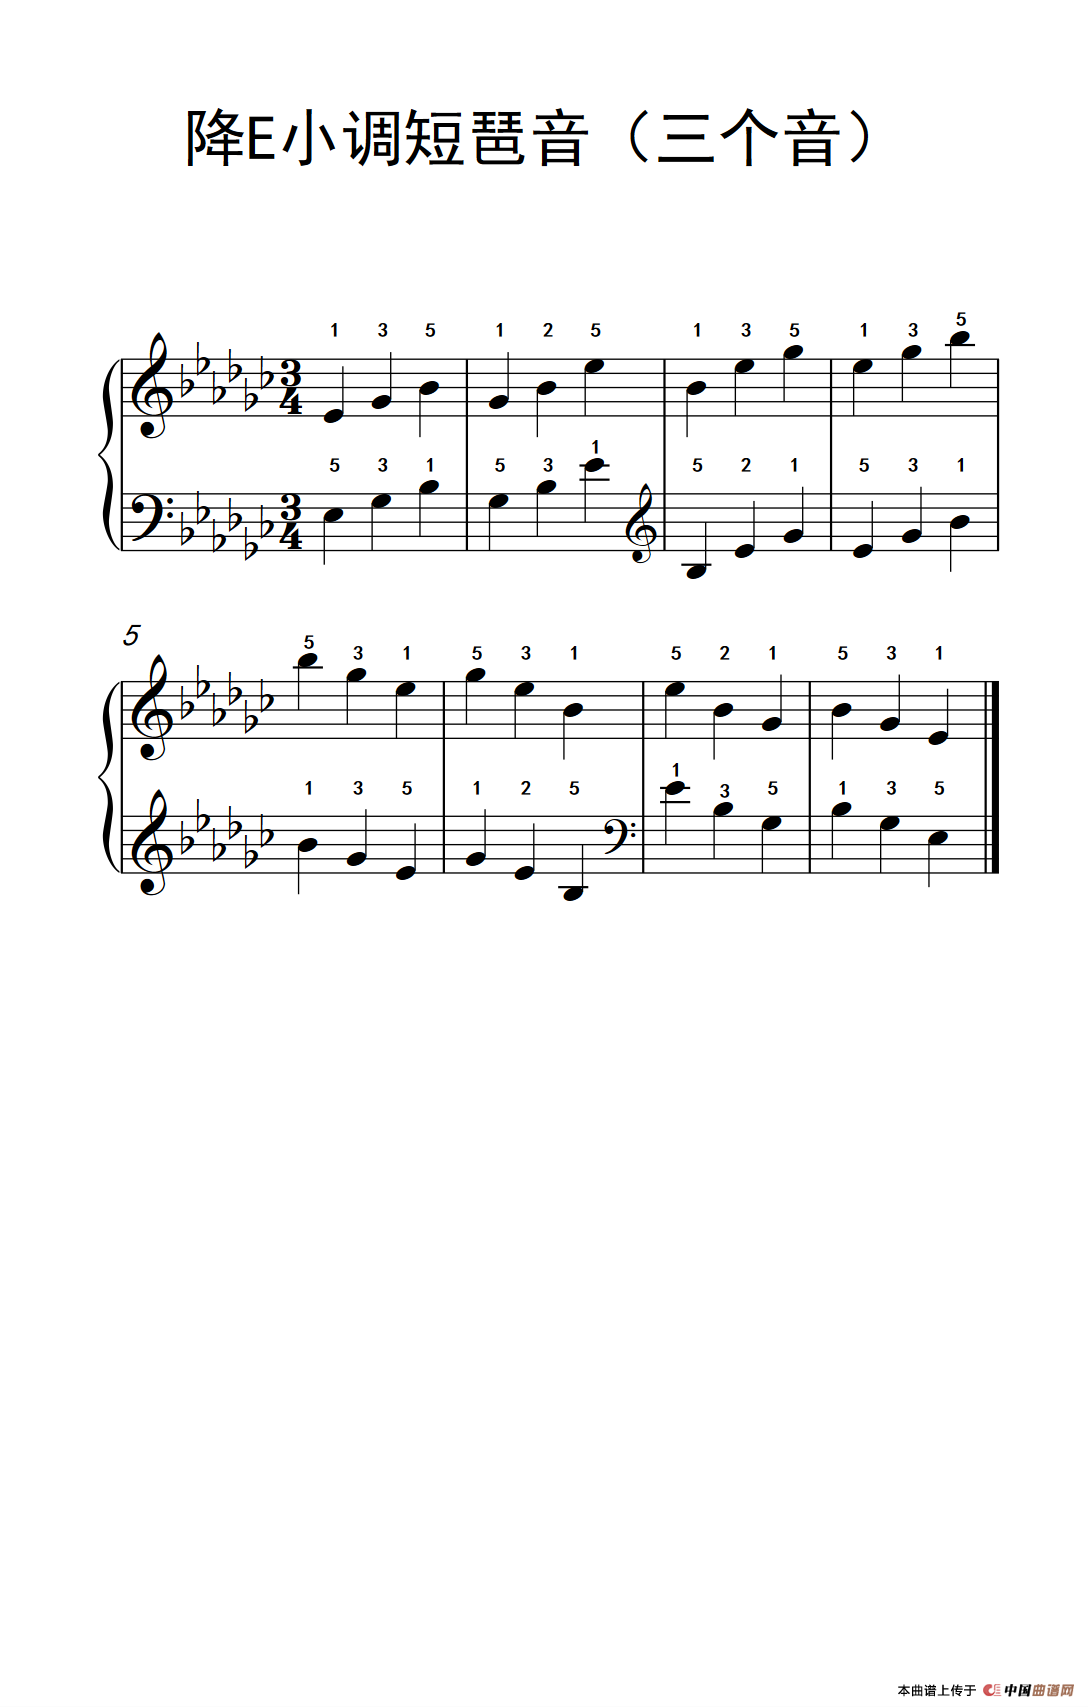 《降E小调短琶音》钢琴曲谱图分享